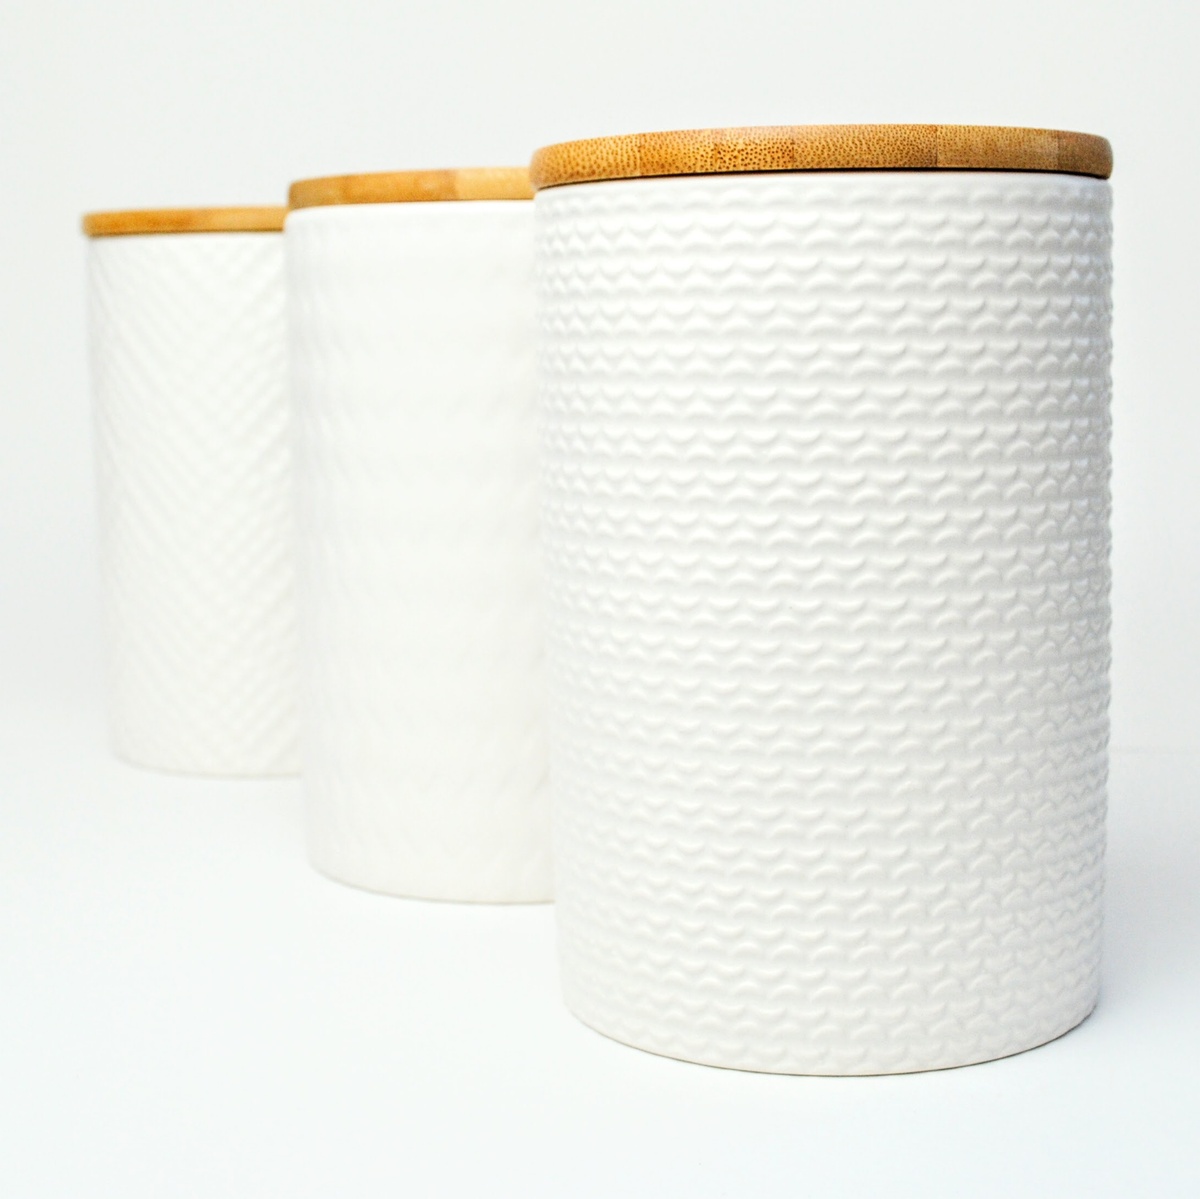 Набор банок для сыпучих продуктов BonaDi Naturel Modern 3 шт 800 мл керамические с бамбуковой крышкой, белые фото